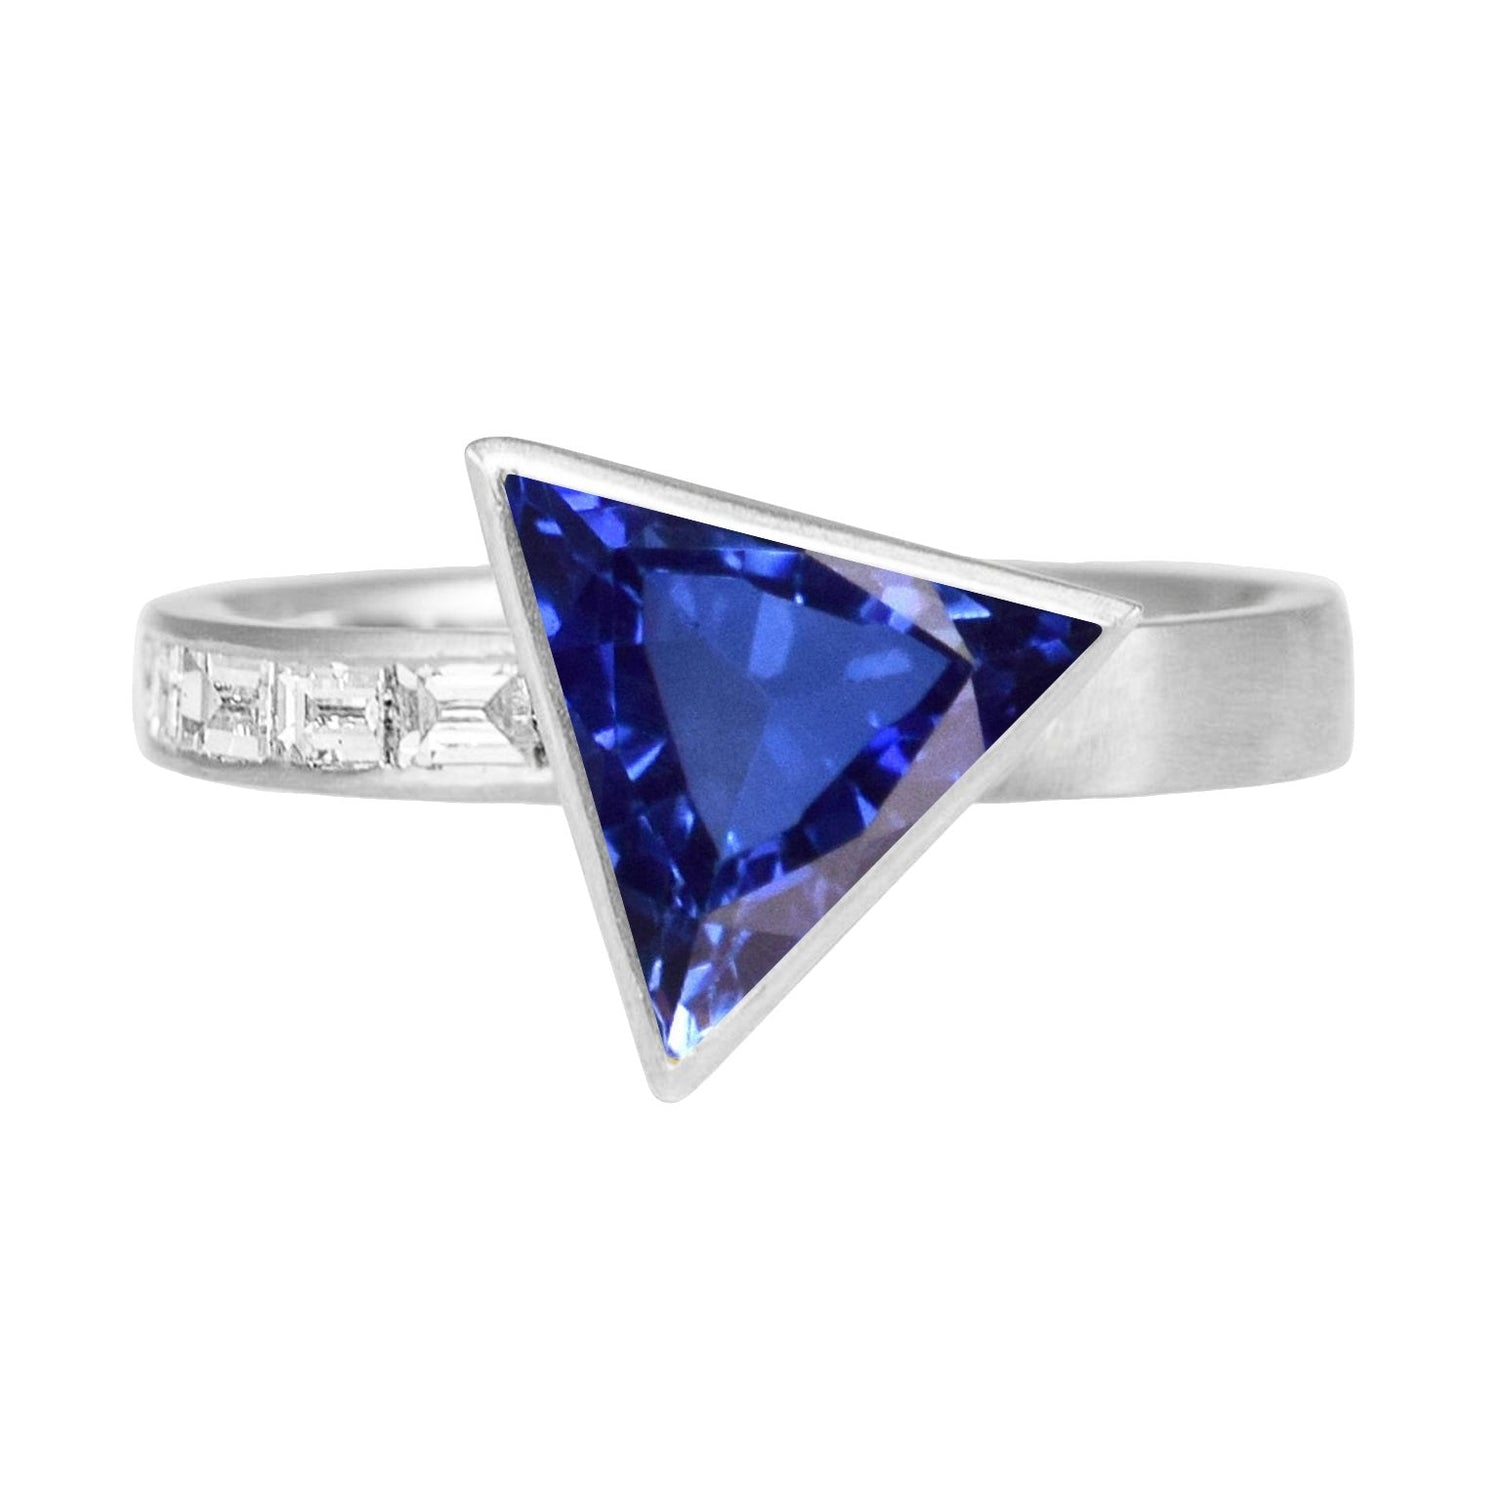 Baguette Diamant Baguette Trillion Lunette Sertie Saphir Bleu 1.75 Carats - HarryChadEnt.FR